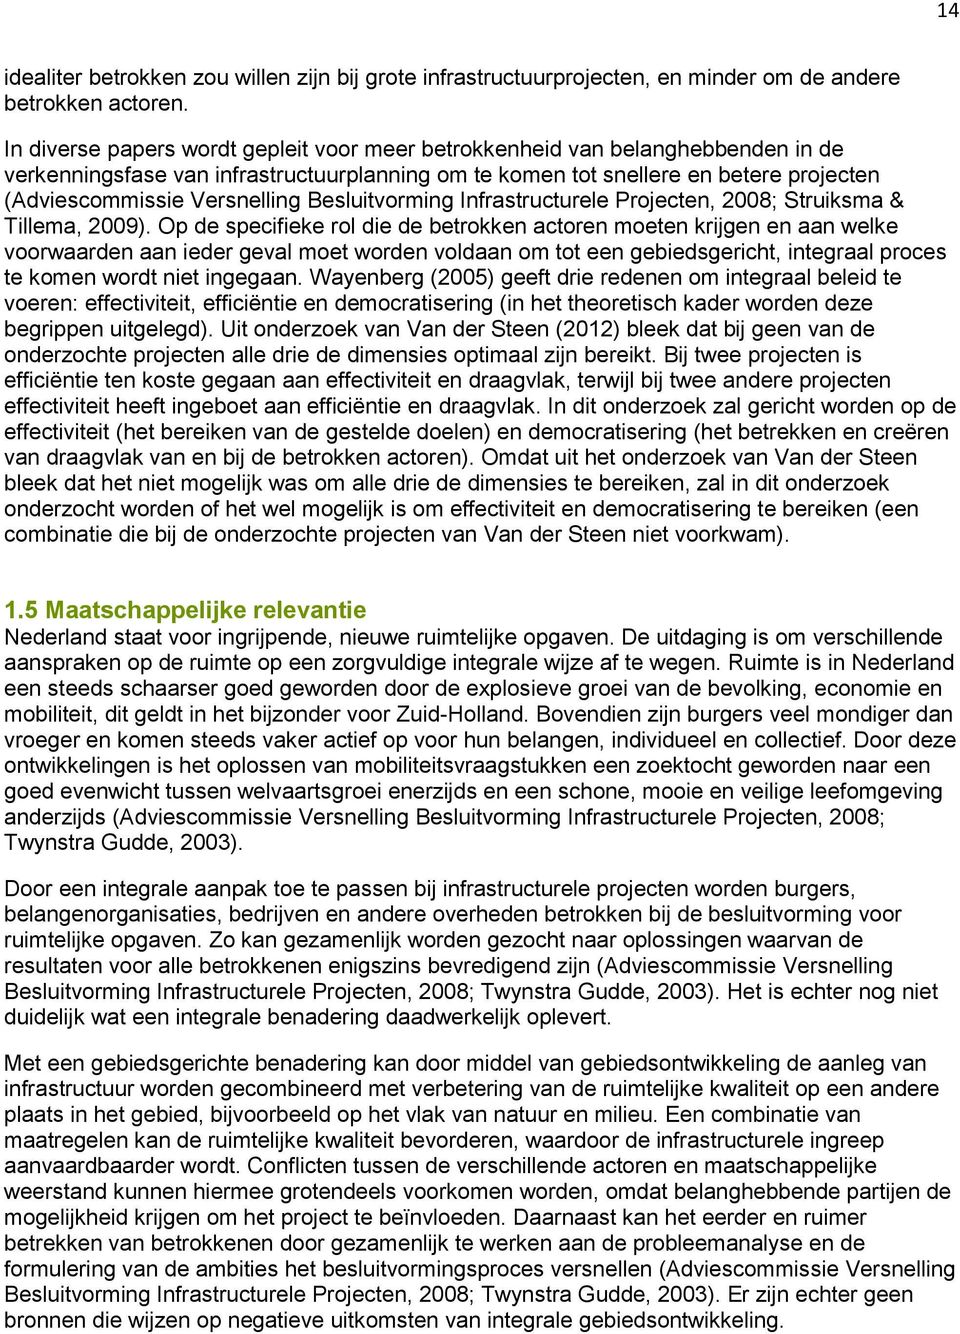 Besluitvorming Infrastructurele Projecten, 2008; Struiksma & Tillema, 2009).